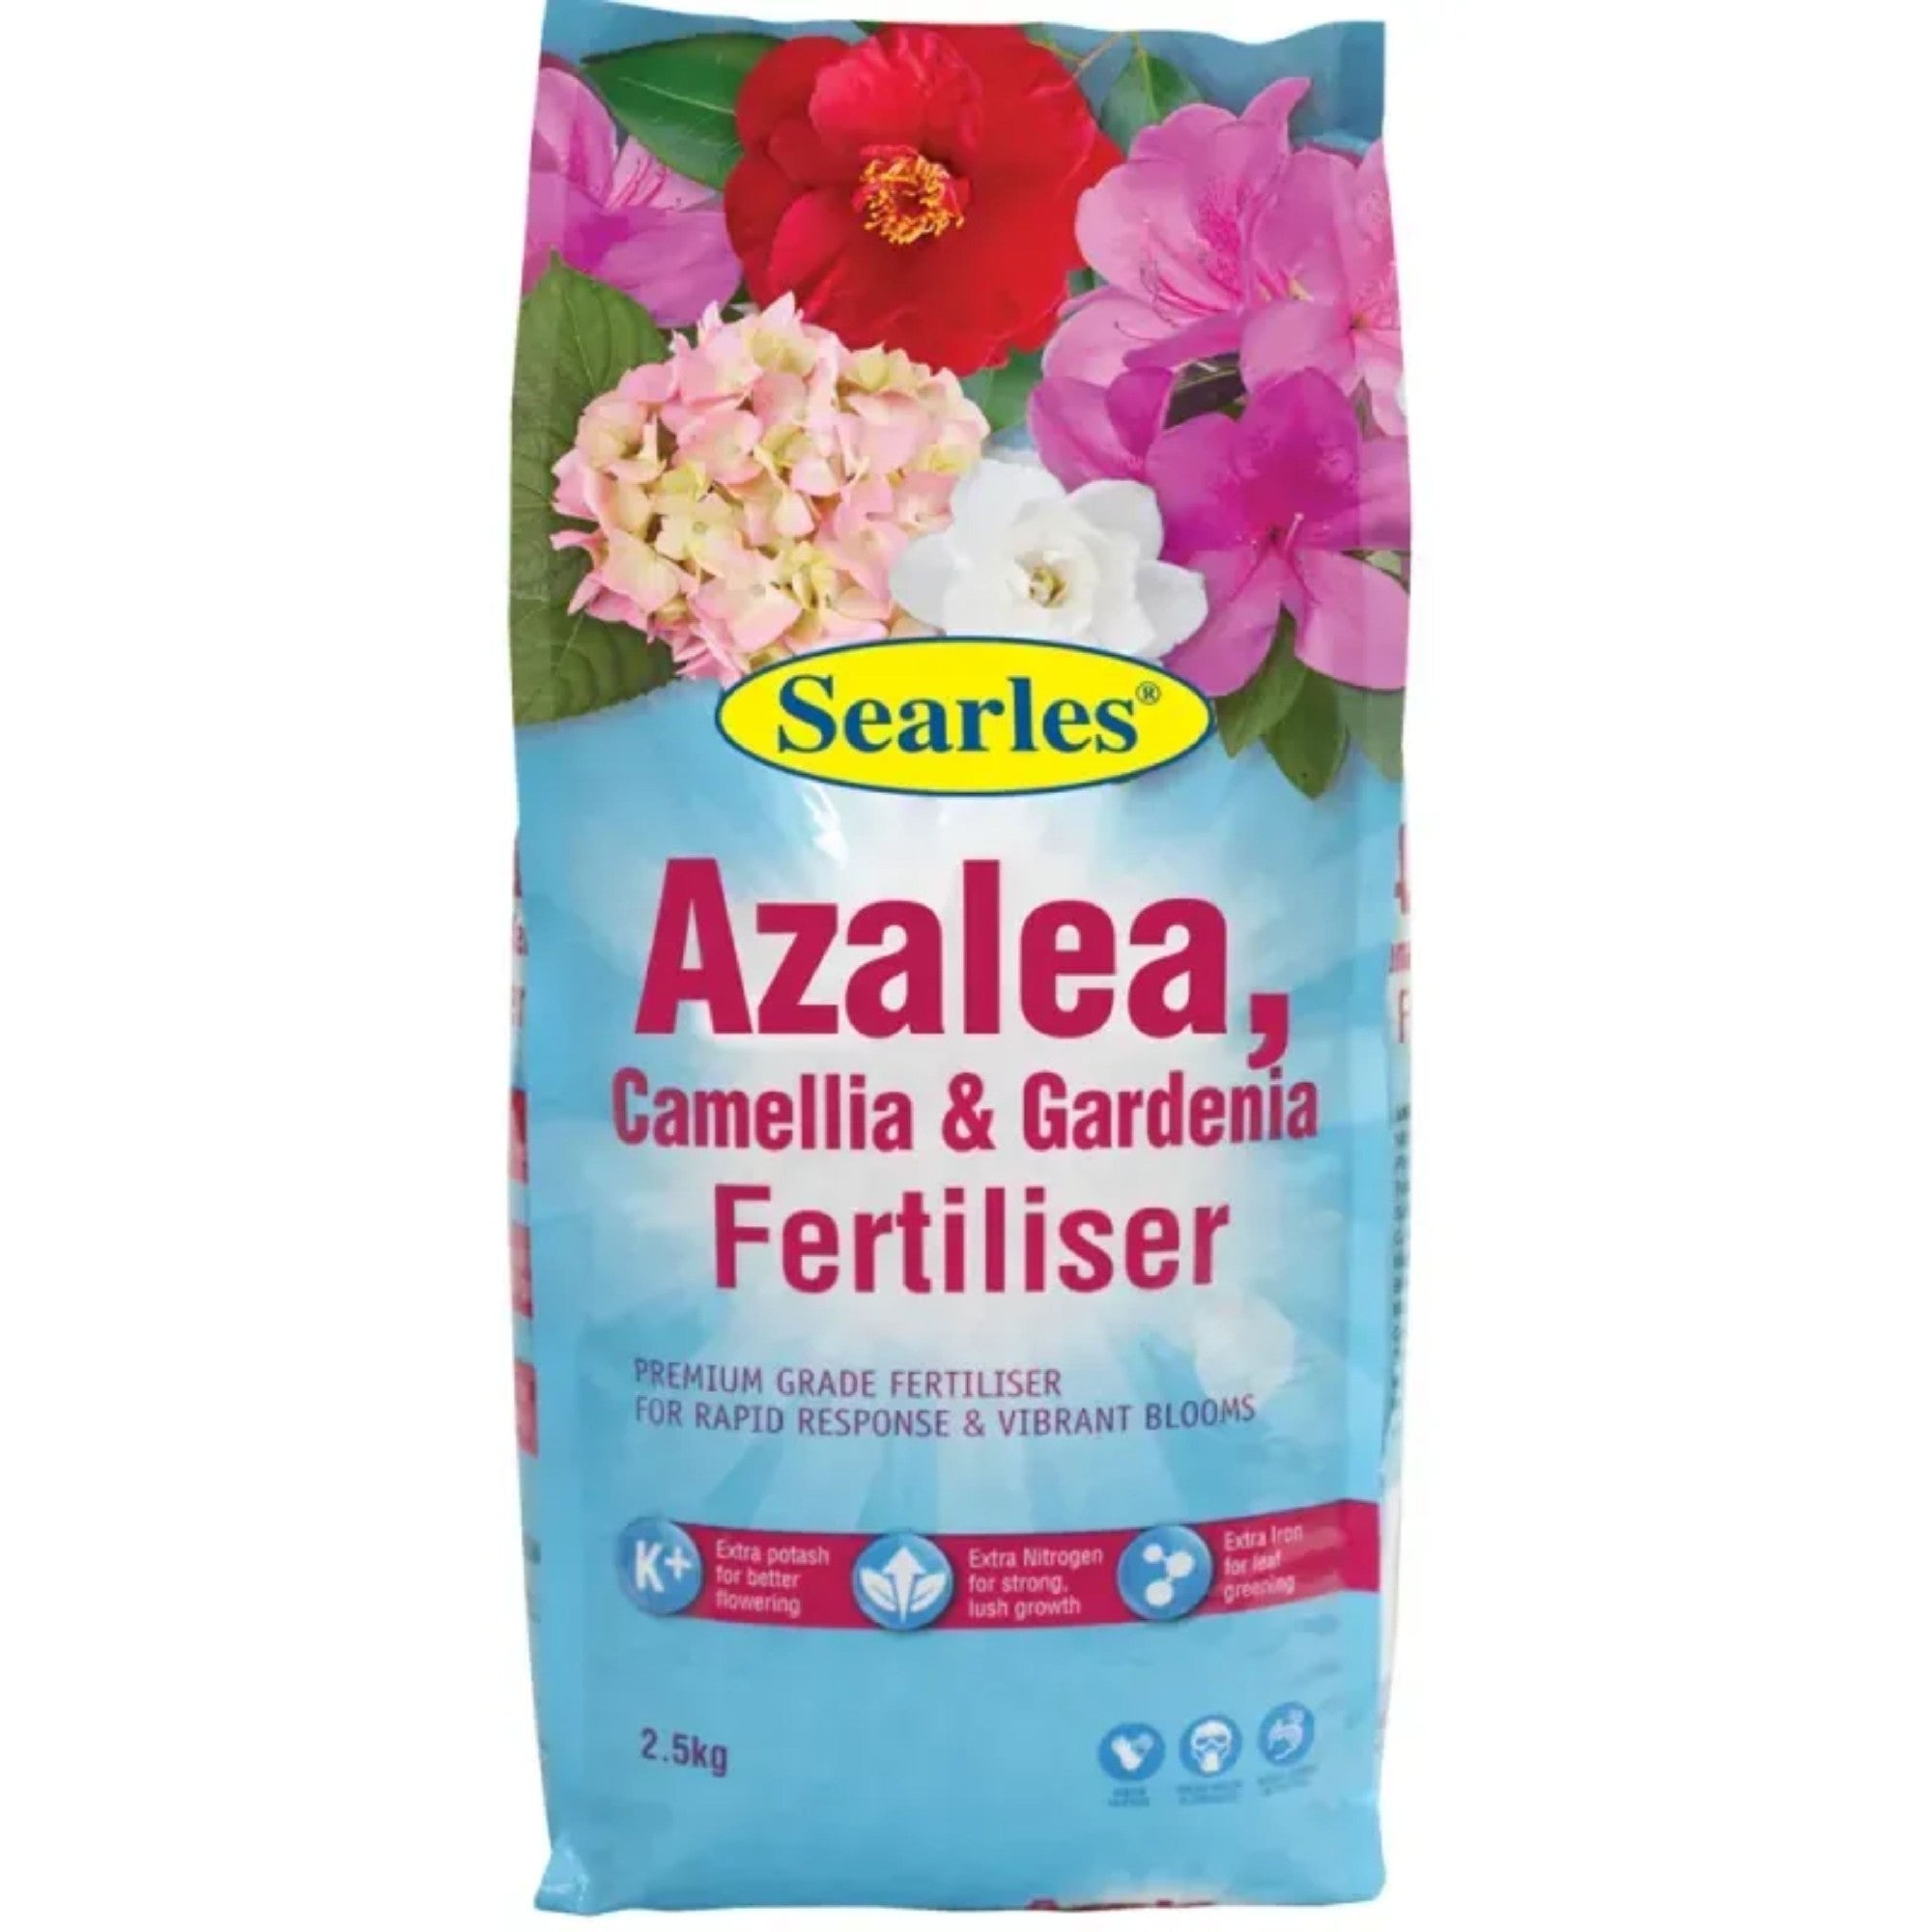 Azalea, Camellia & Gardenia Fertiliser 2.5kg